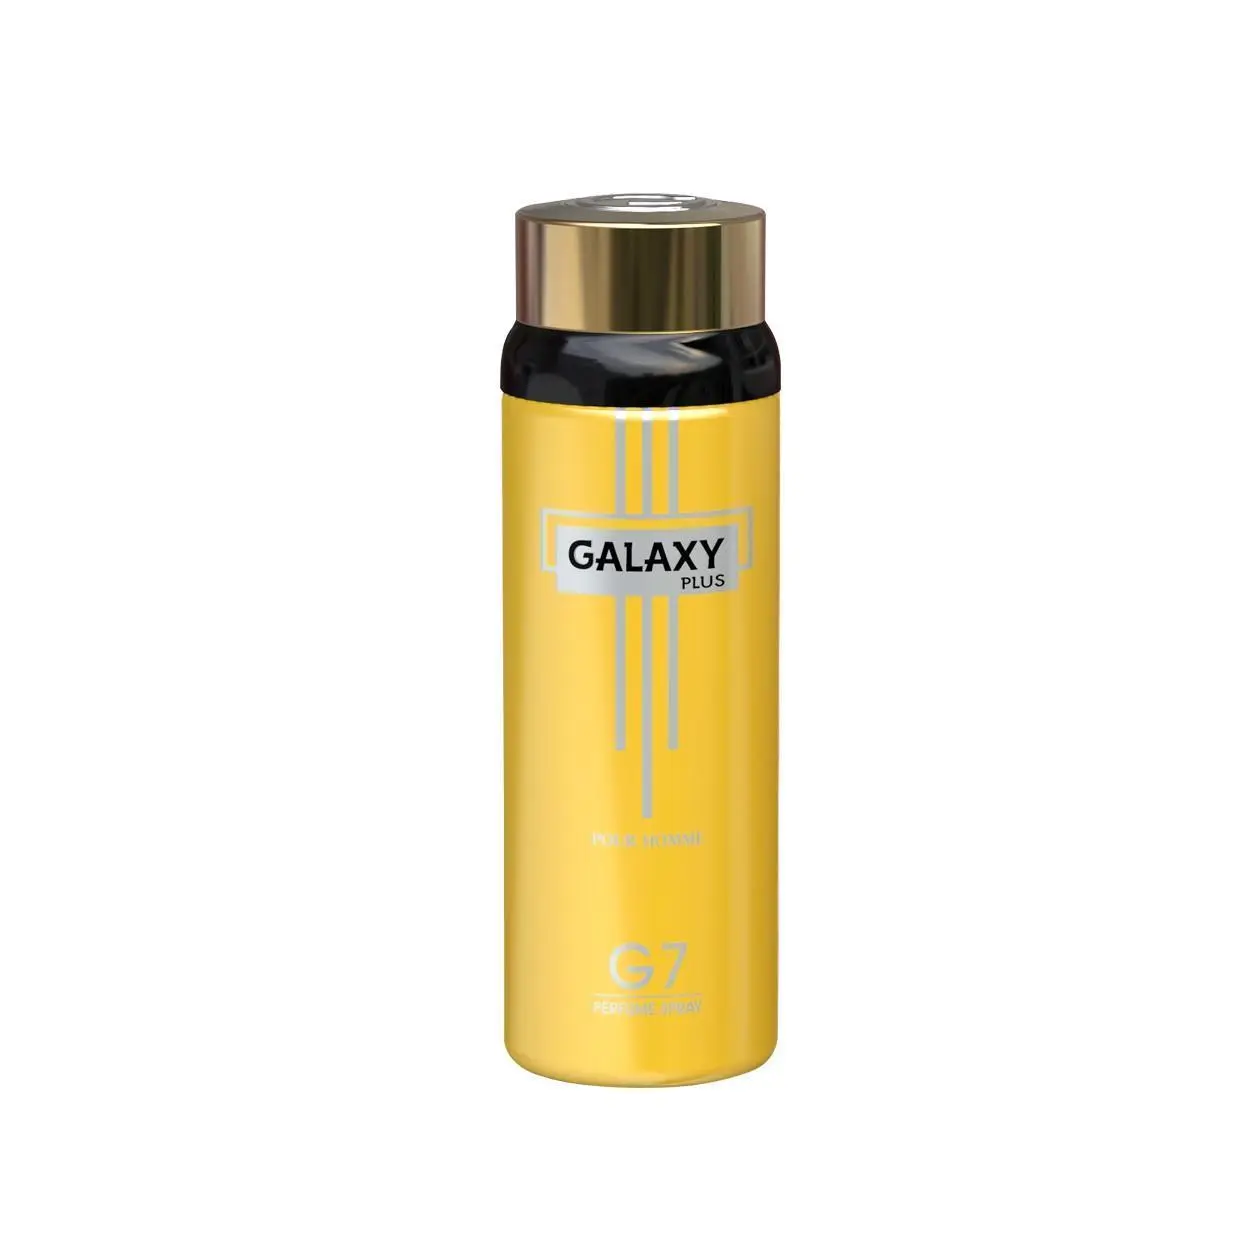 Galaxy Plus G7 200Ml Perfume Spray Pour Homme